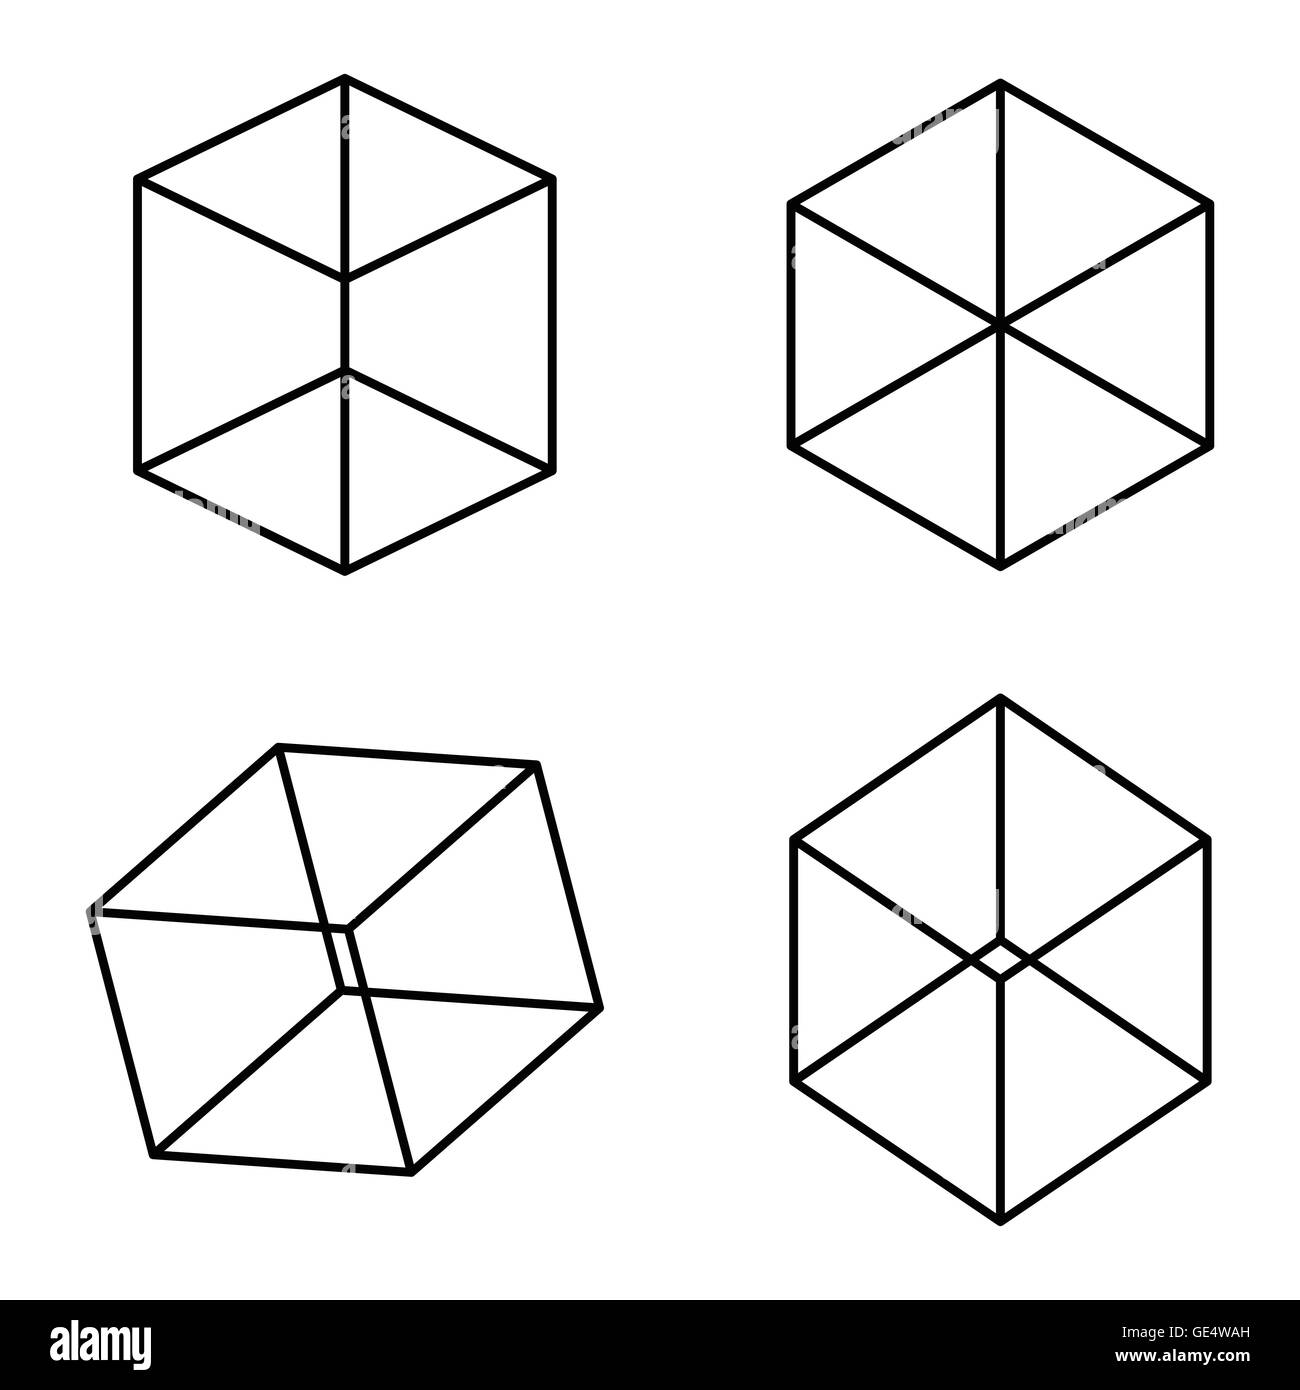 Cubi Kopfermann illusione ottica. Ci vuole un po' di tempo per vedere i cubetti in prima fila. Foto Stock